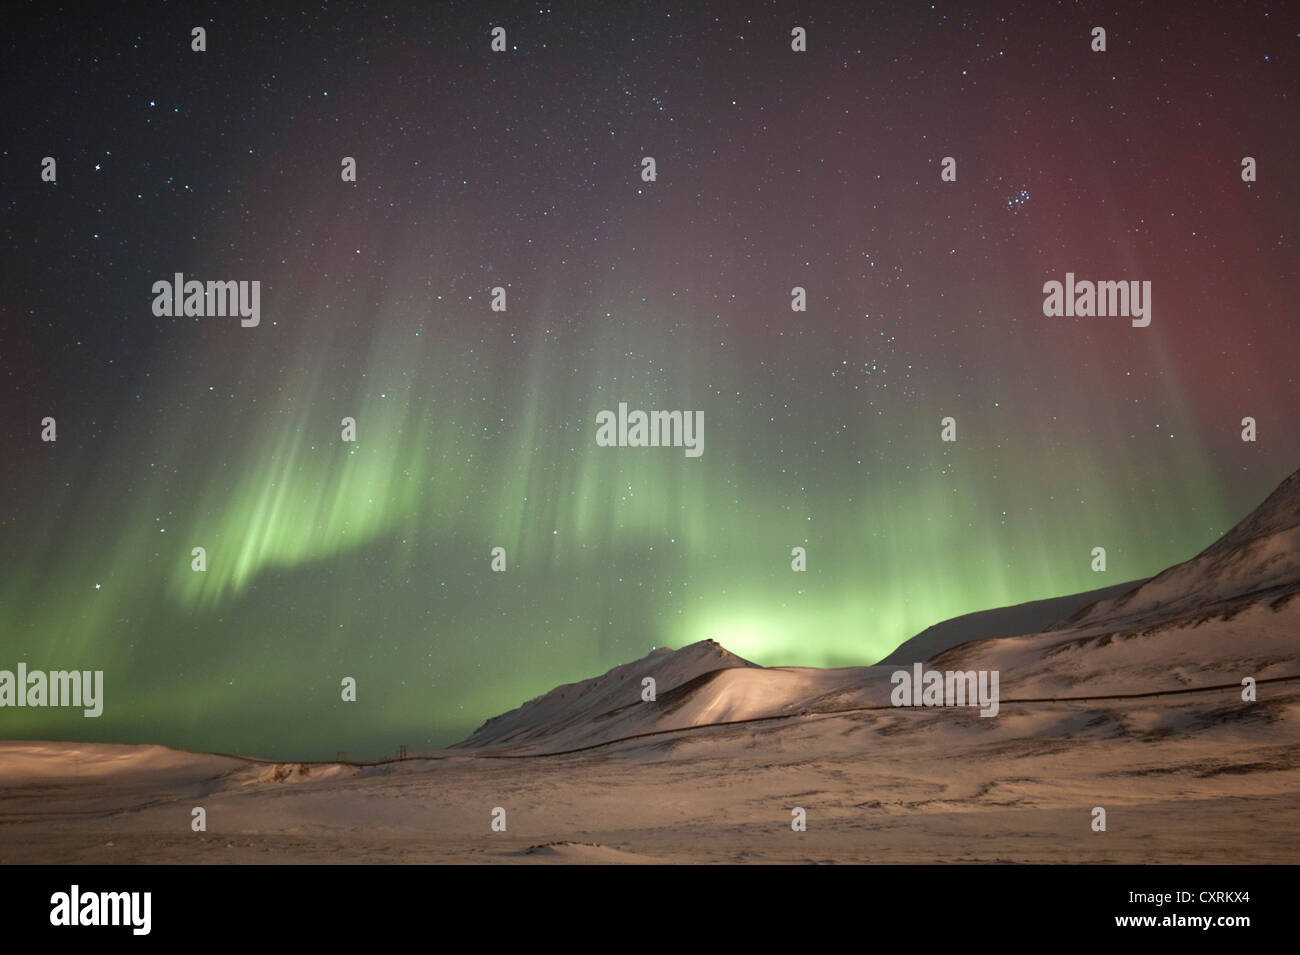 Vert et Rouge lumières polaires, northern lights, aurora borealis au-dessus d'un paysage couvert de neige, le paysage est éclairé par Banque D'Images